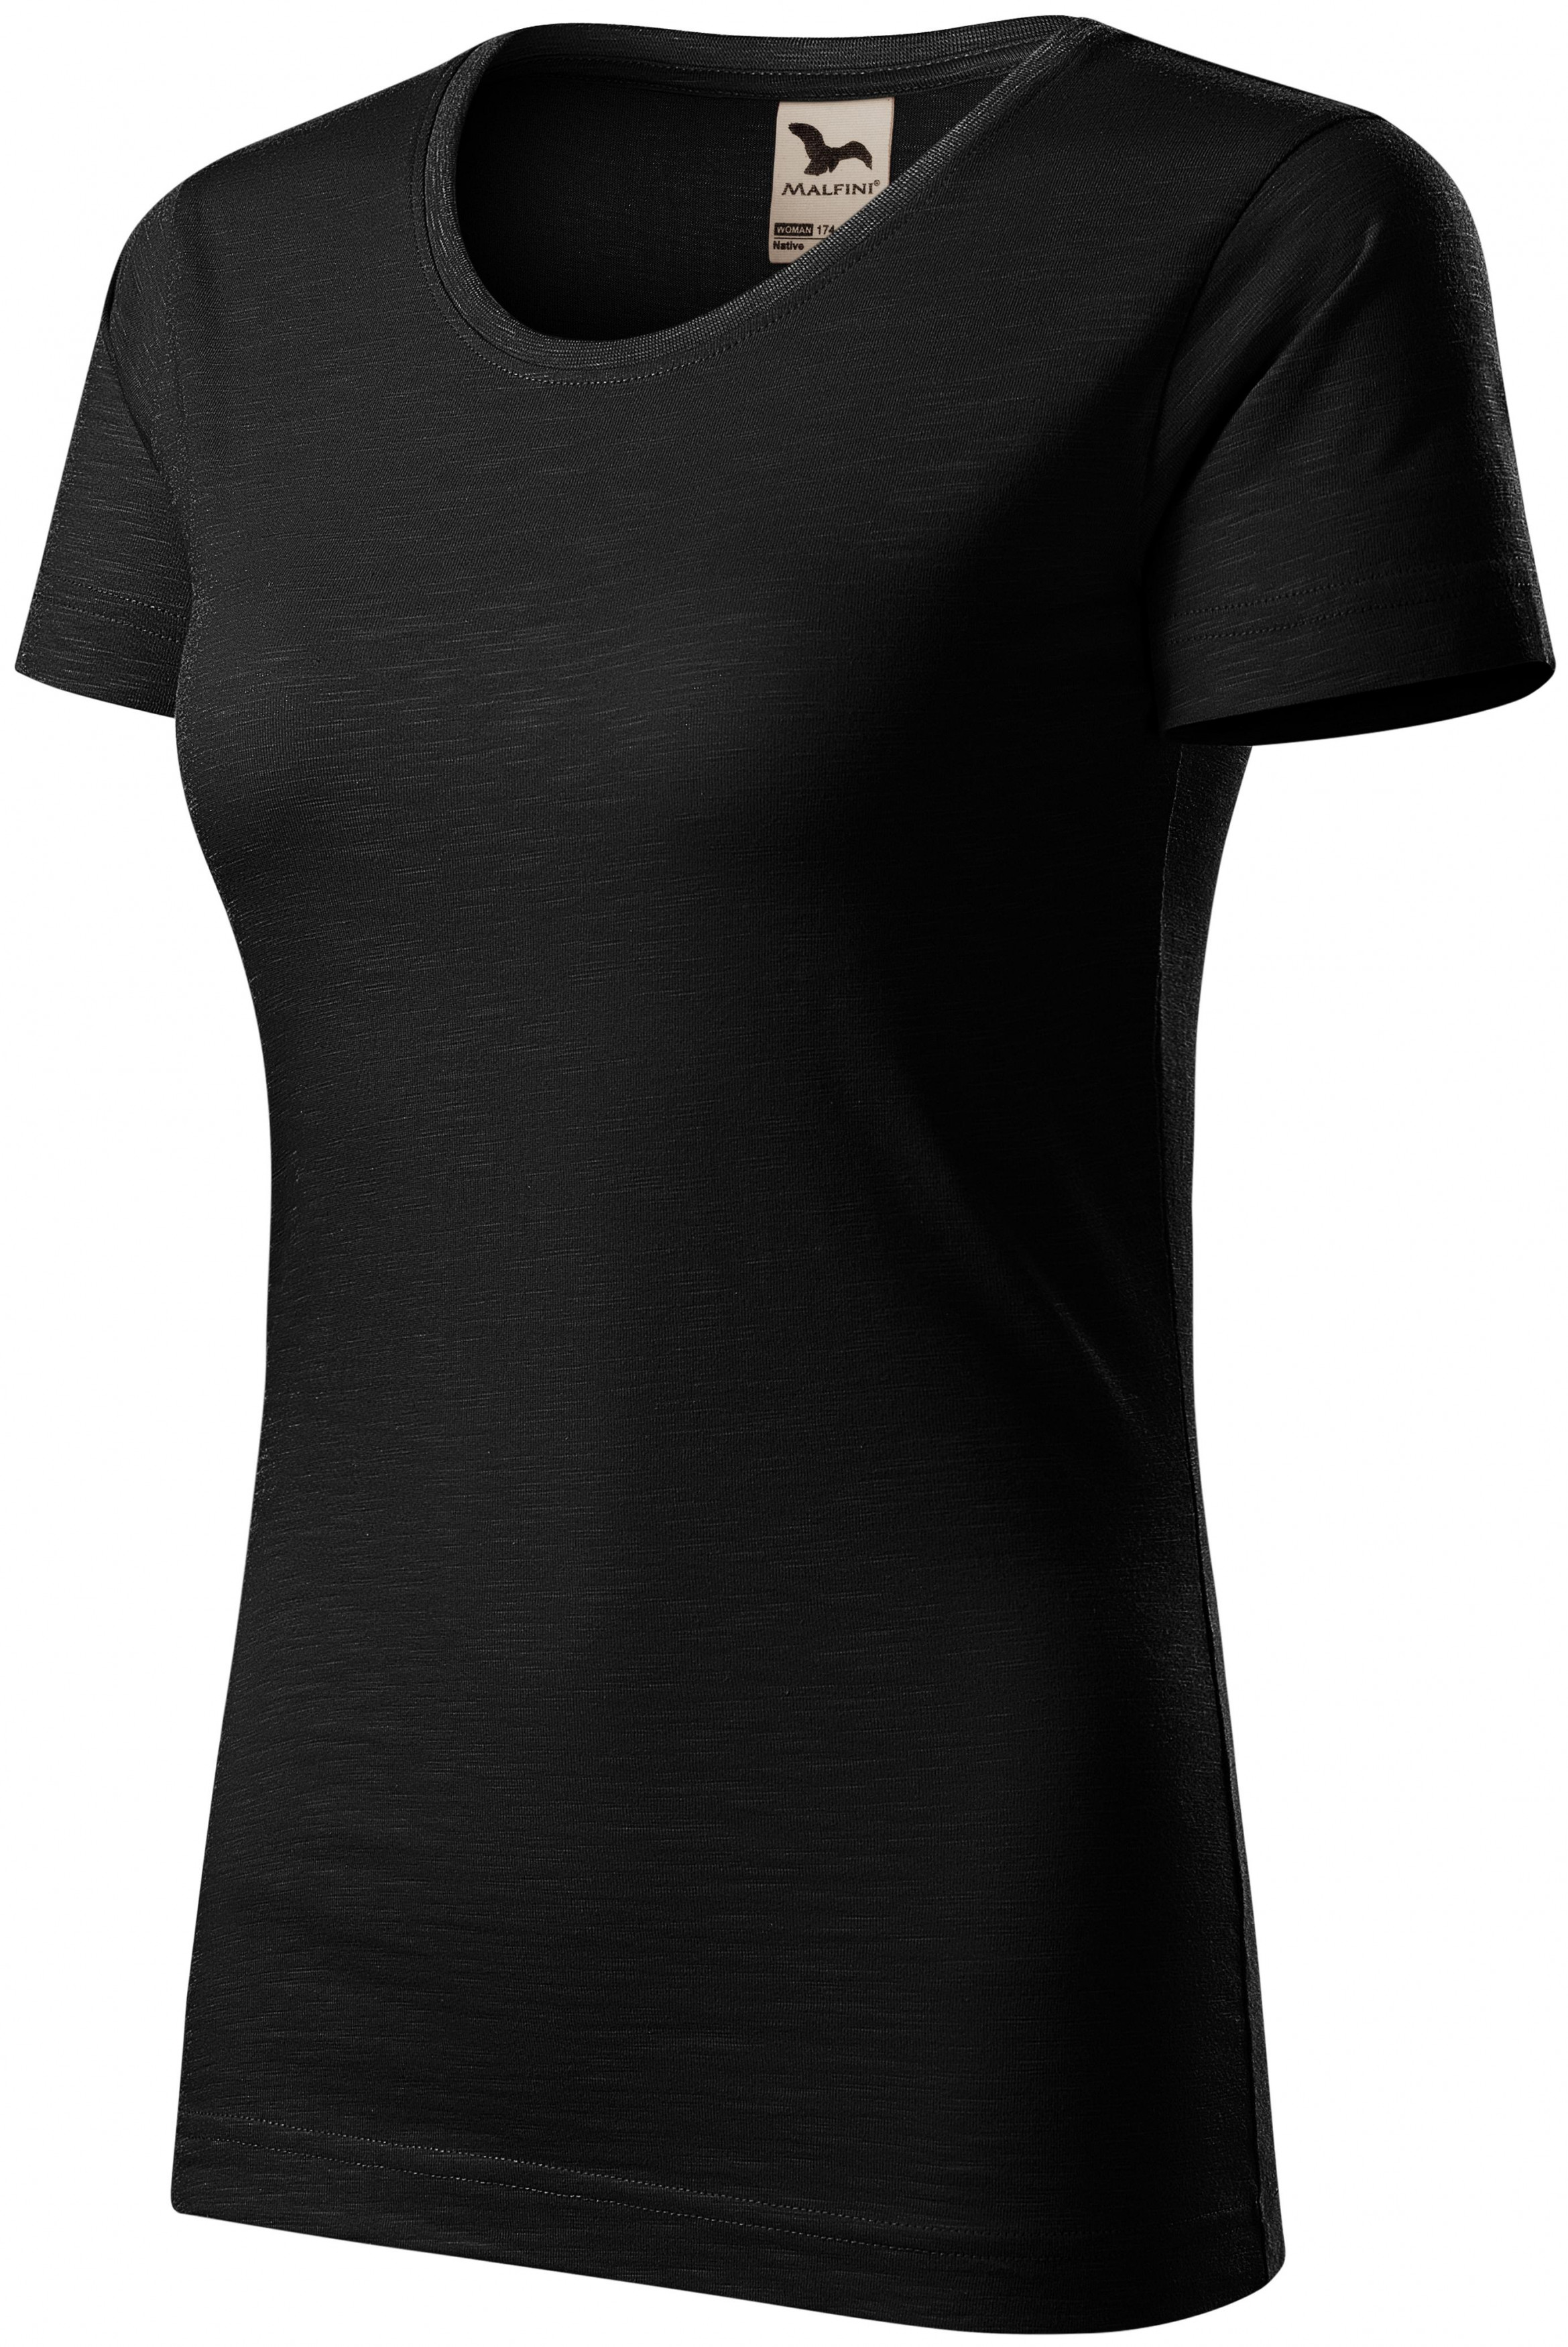 Dámske tričko, štruktúrovaná organická bavlna, čierna, XS